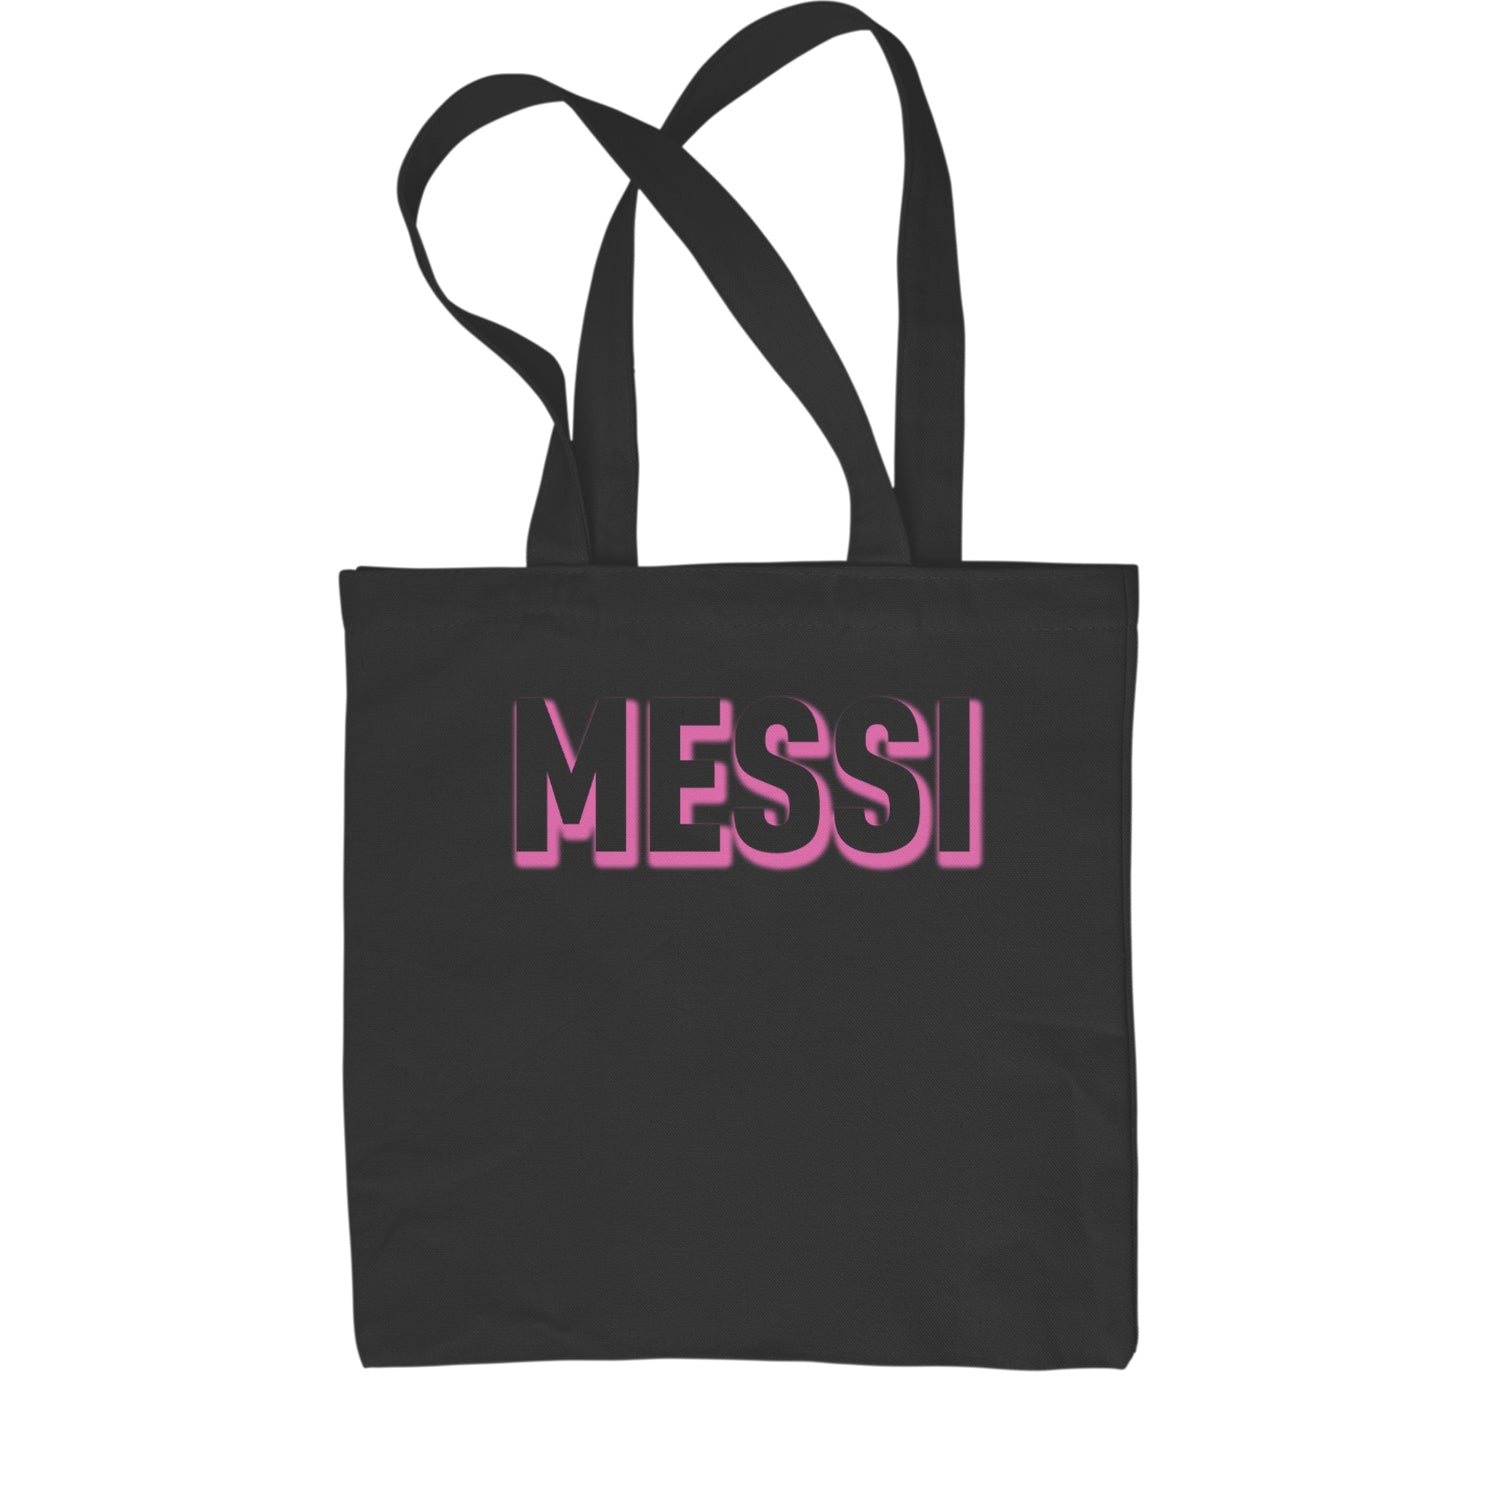 Messi OUTLINE Miami Futbol Shopping Tote Bag